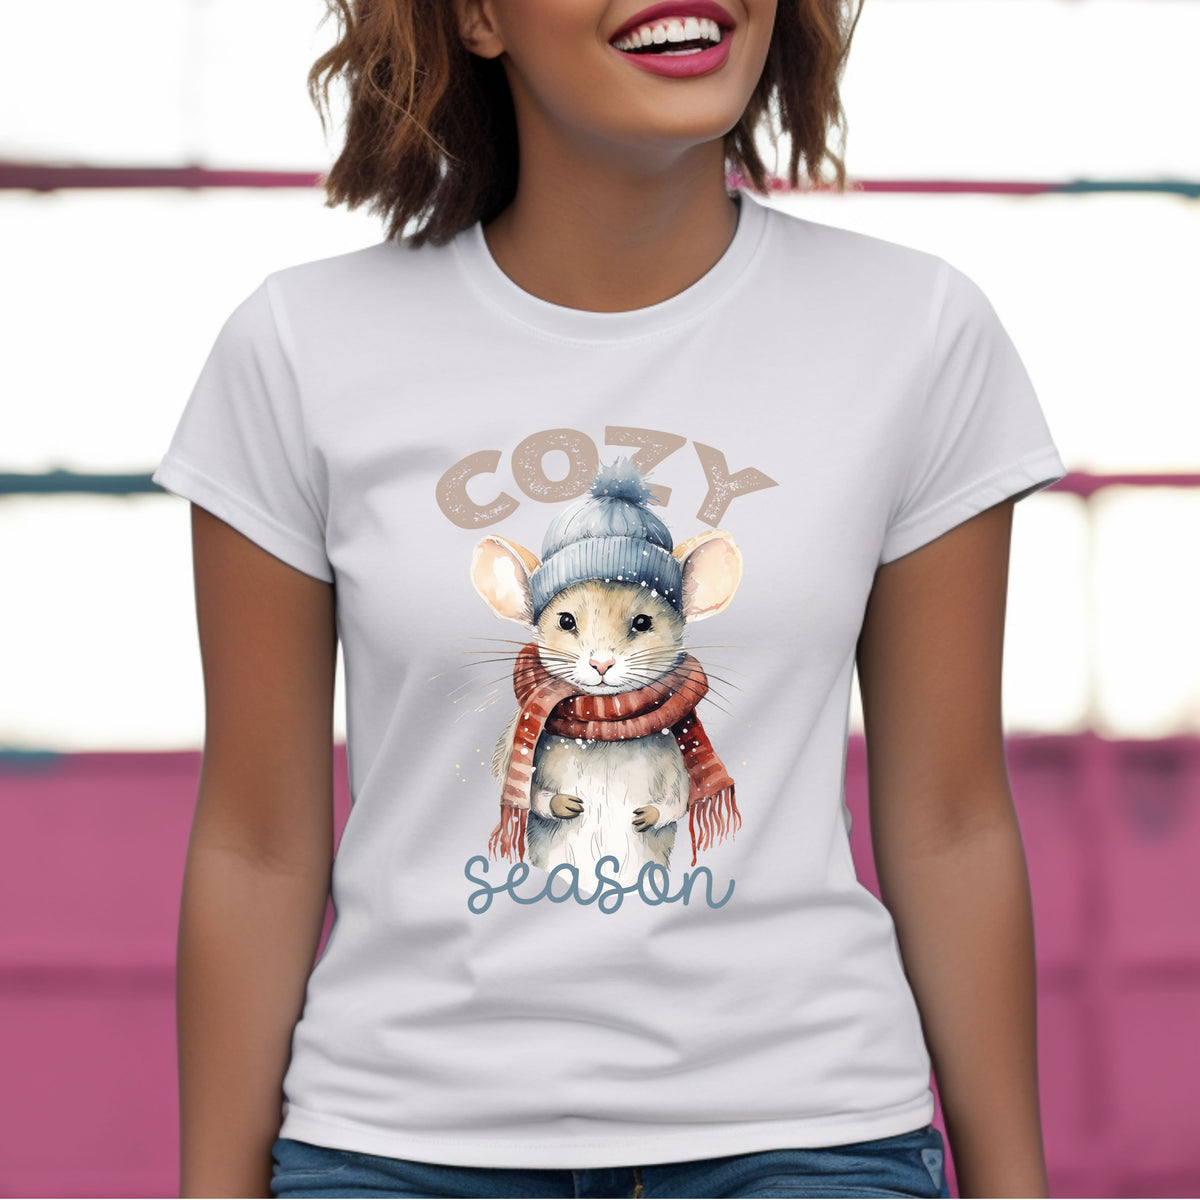 Cozy Season Cute Mouse Shirt | Women's White Slim Fit Tshirt